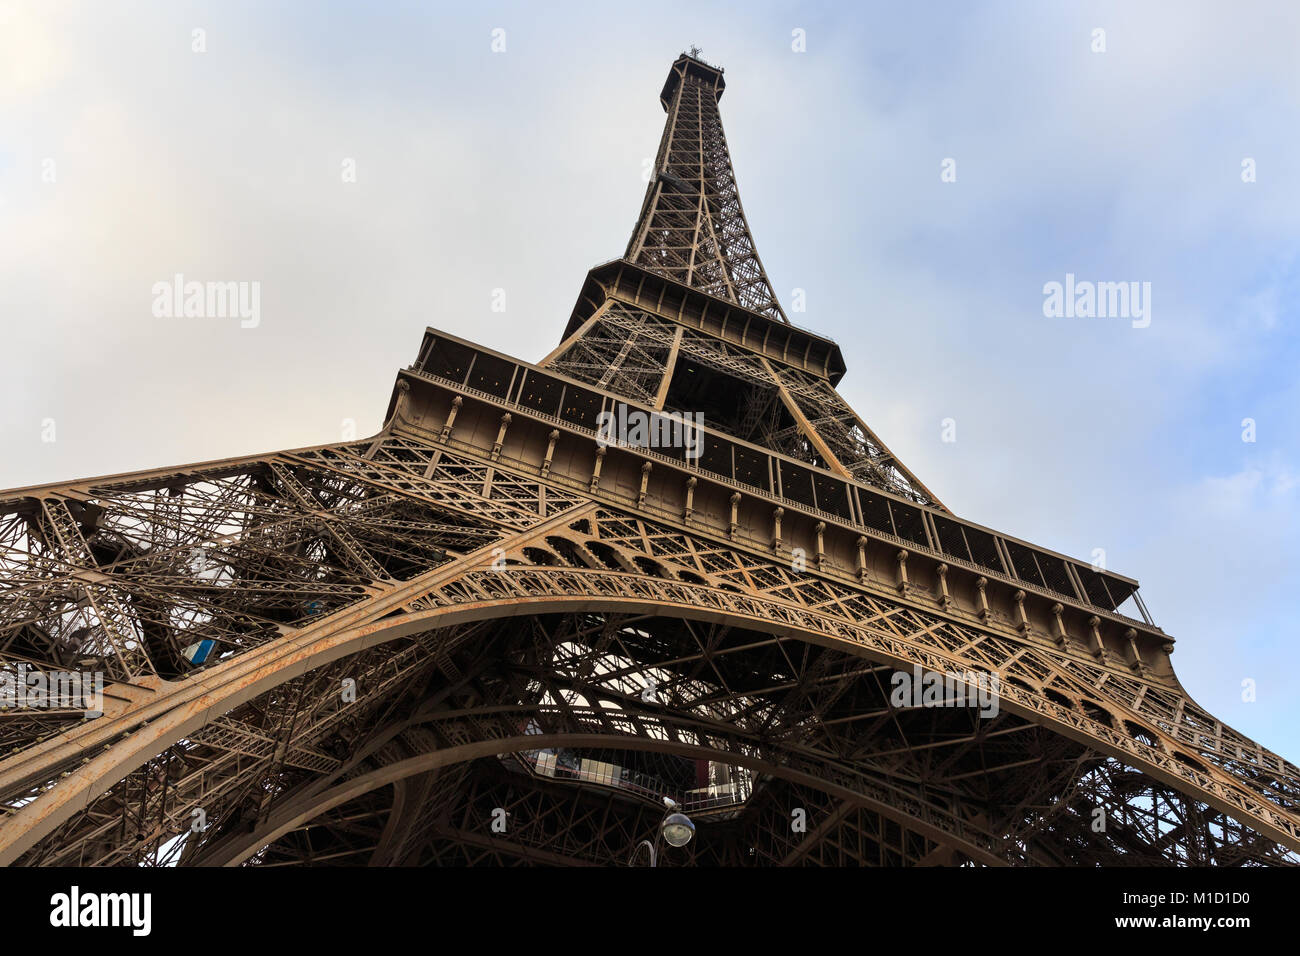 La Tour Eiffel de bas en haut, Paris, France Photo Stock - Alamy